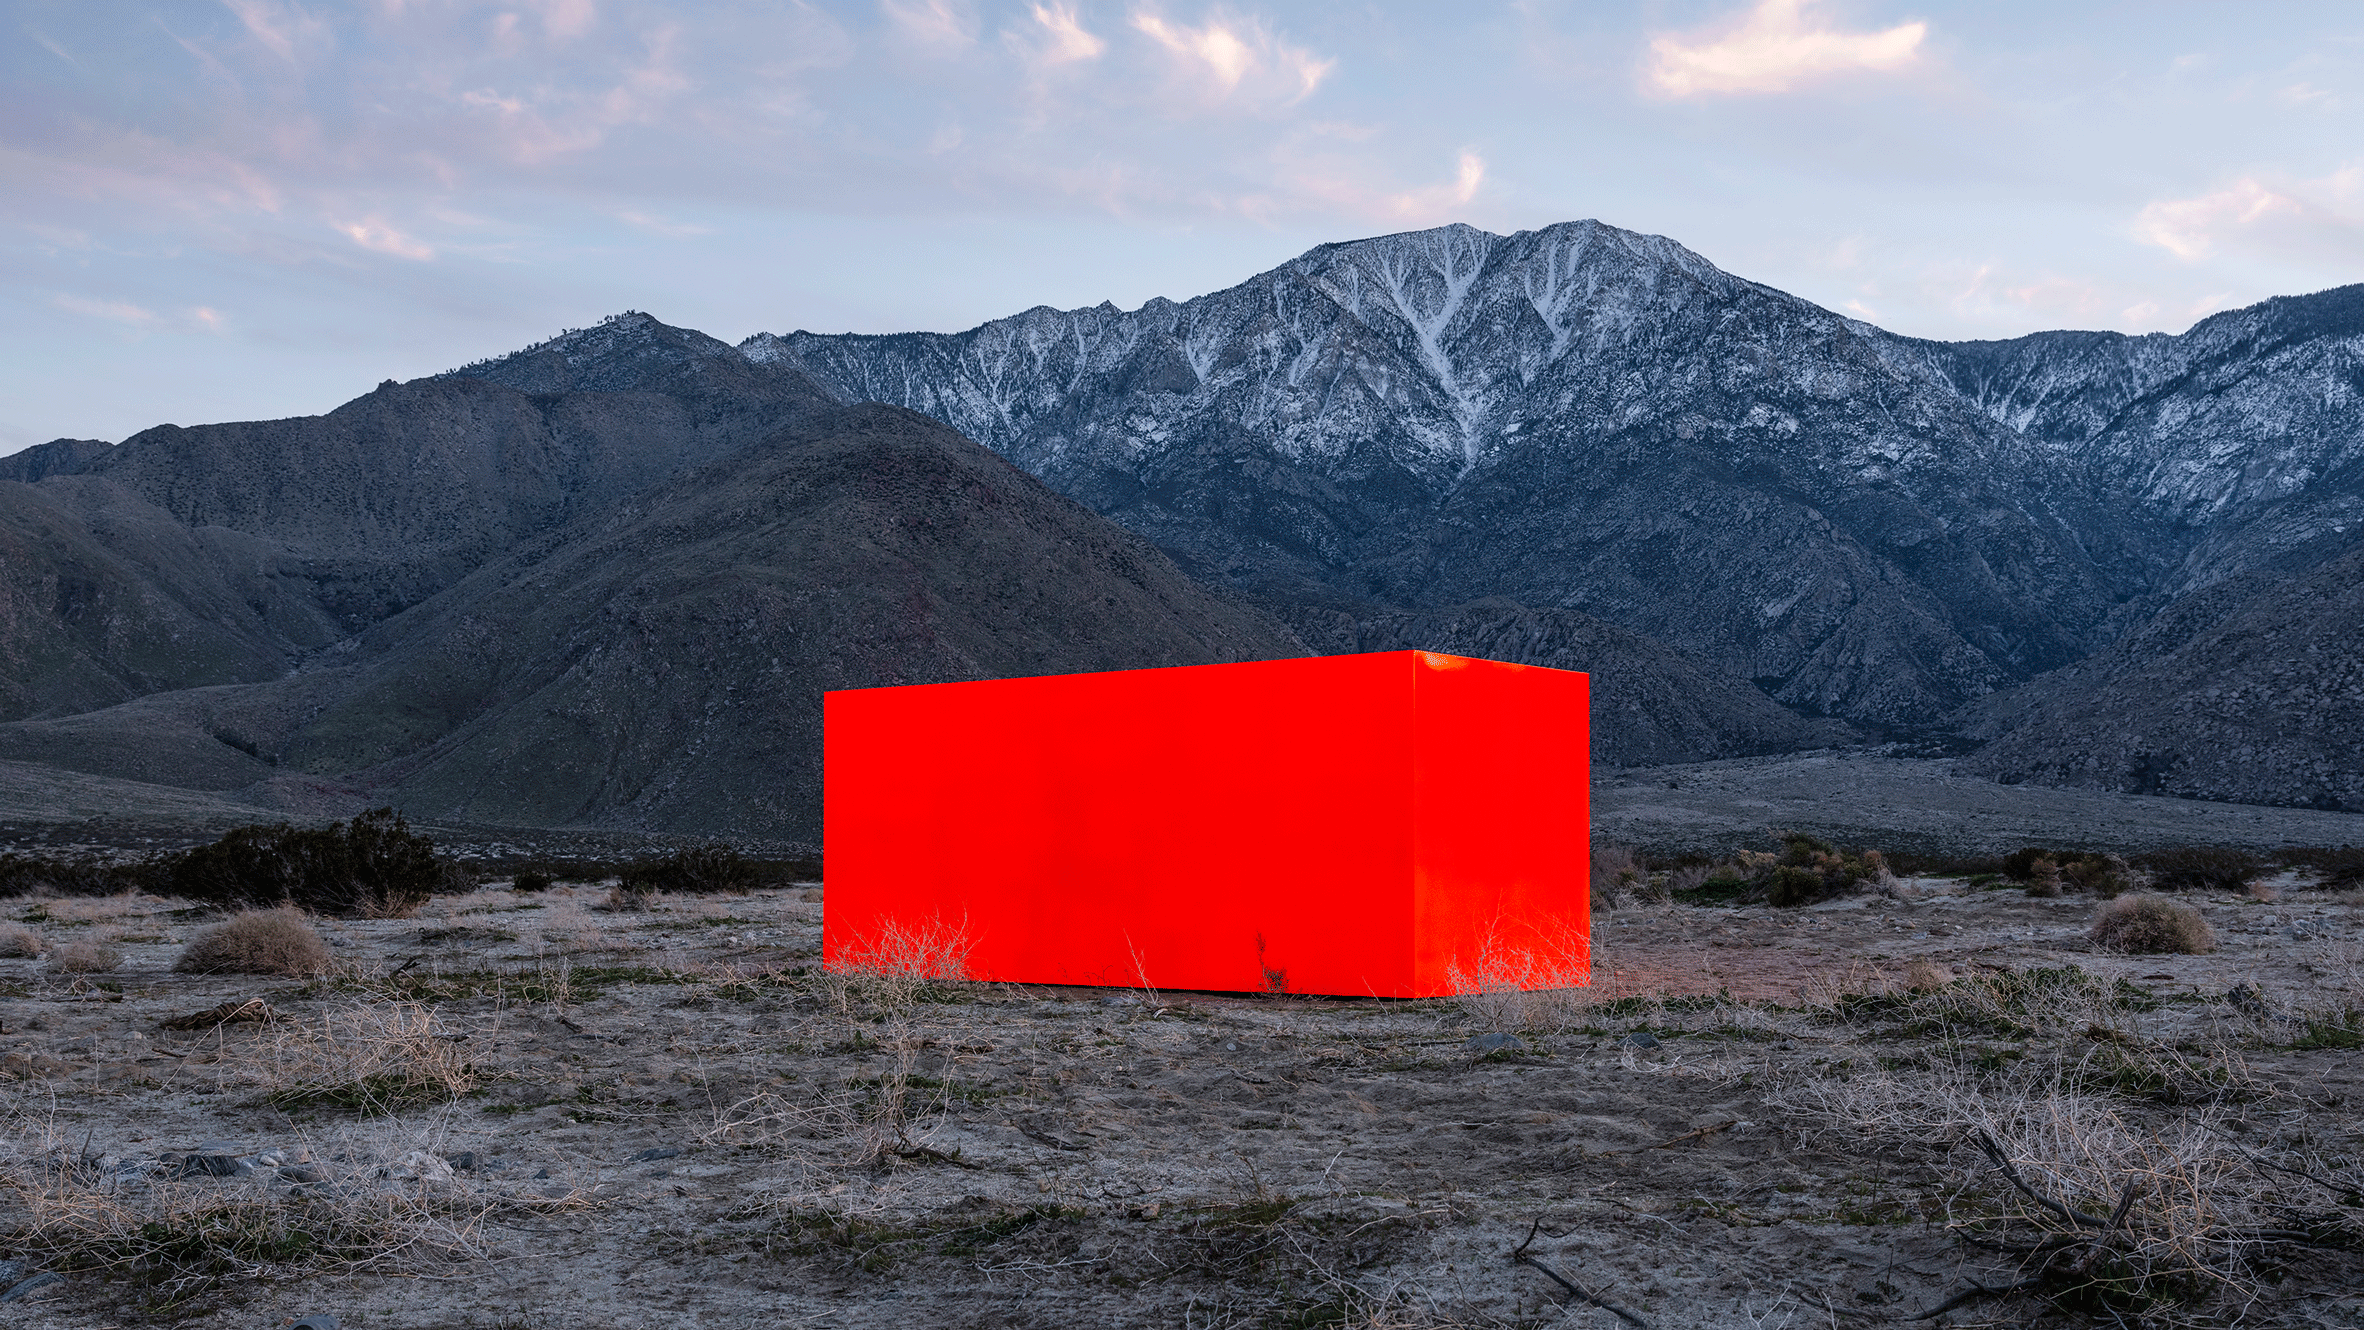 Sterling Ruby's installation for Desert X 2019